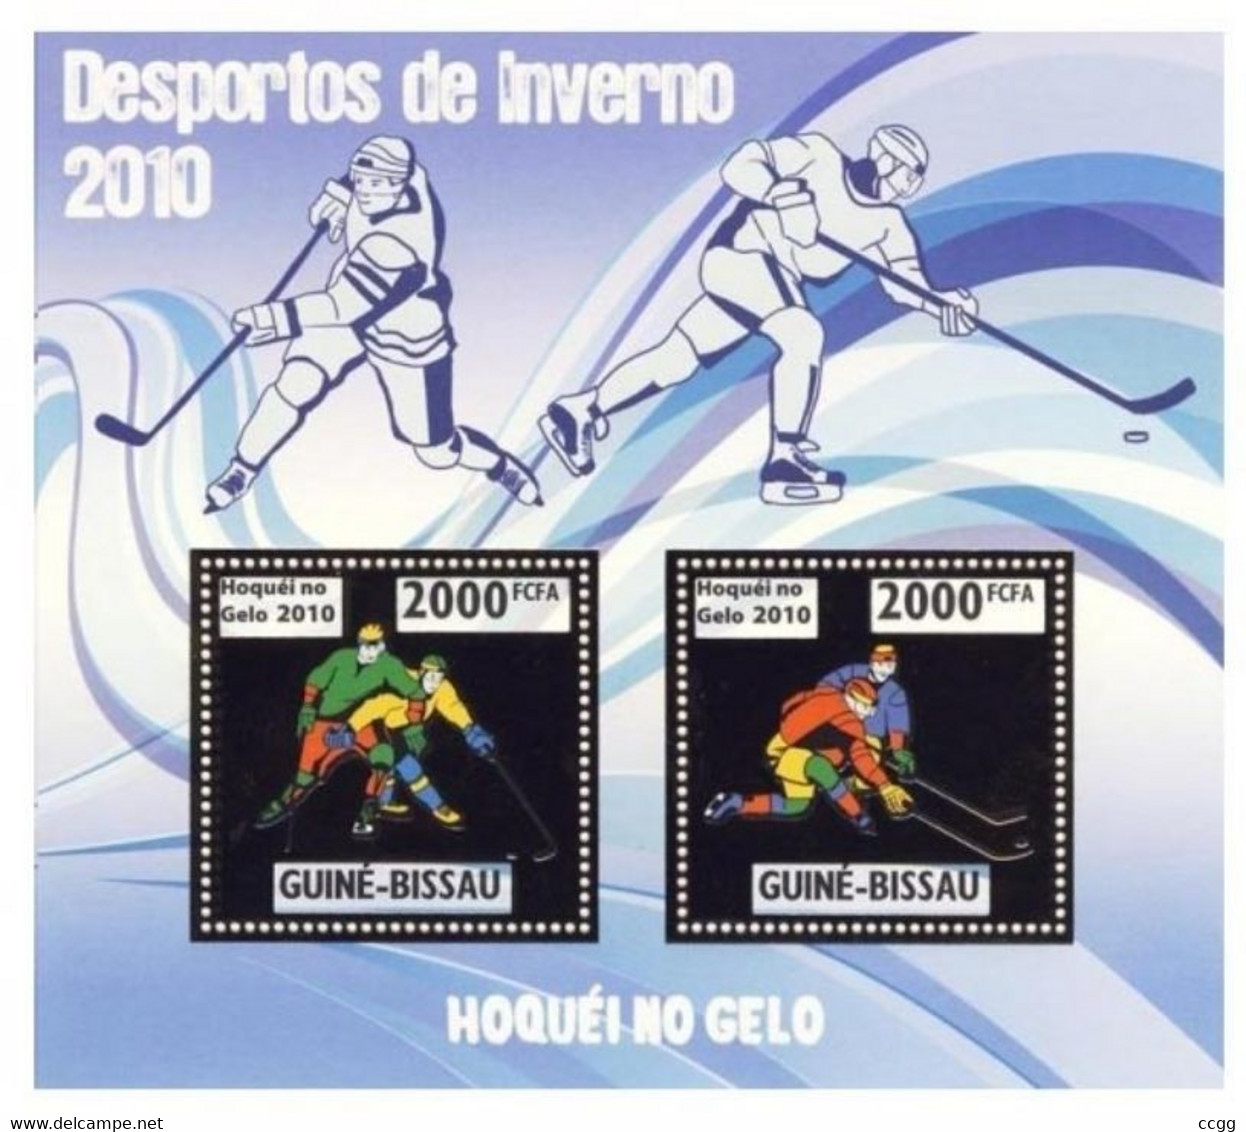 Olympische Spelen  2010 , Guinea Bissau  - Blok ( Zegels Goud )  Postfris - Invierno 2010: Vancouver